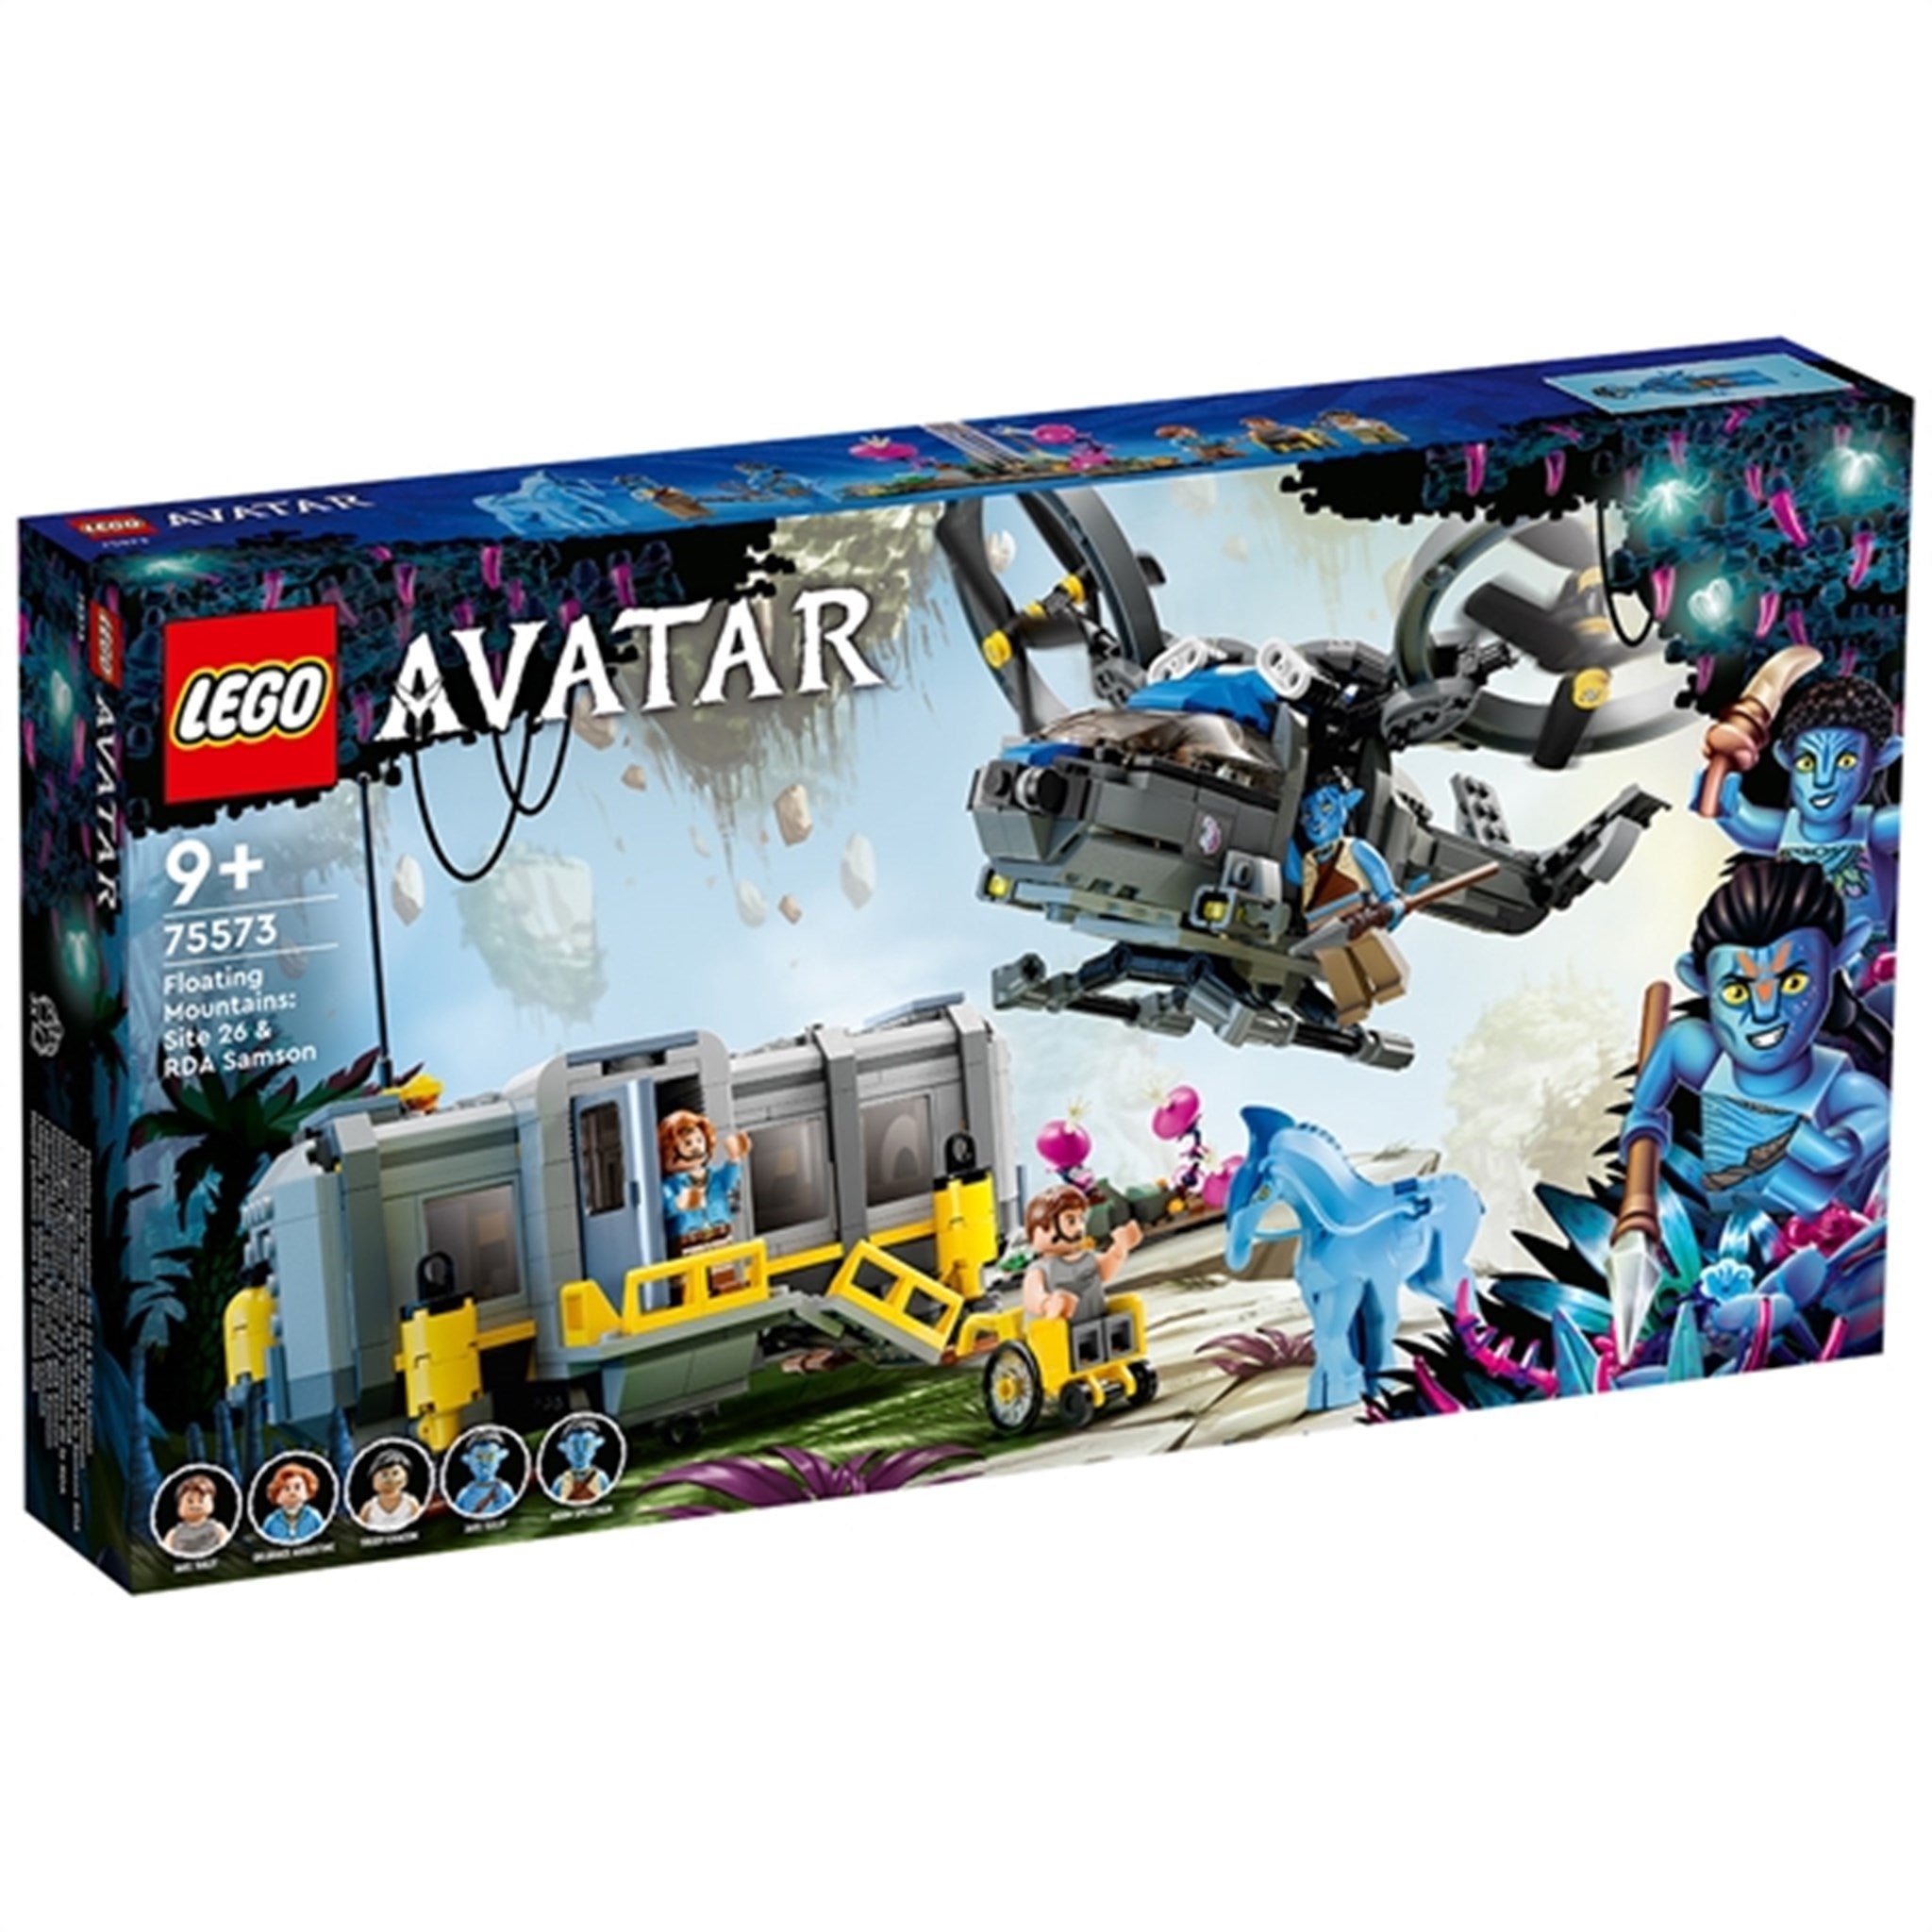 LEGO® Avatar Svävande Bergen: Site 26 och RDA Samson